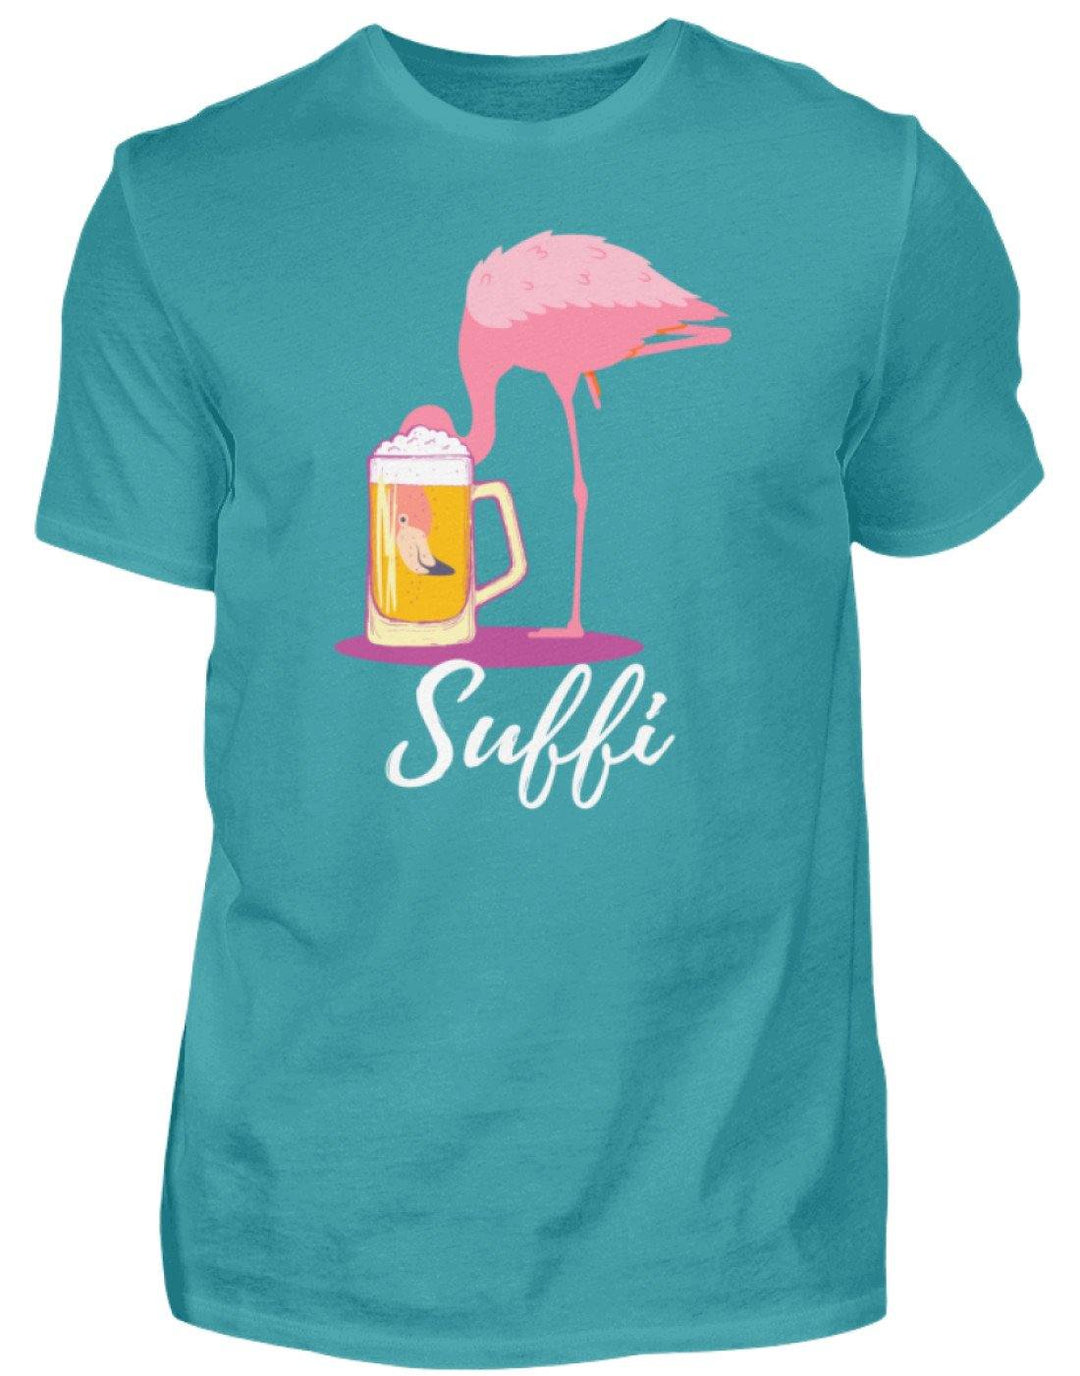 Flamingo Suffi - Words on Shirt  - Herren Shirt - Words on Shirts Sag es mit dem Mittelfinger Shirts Hoodies Sweatshirt Taschen Gymsack Spruch Sprüche Statement